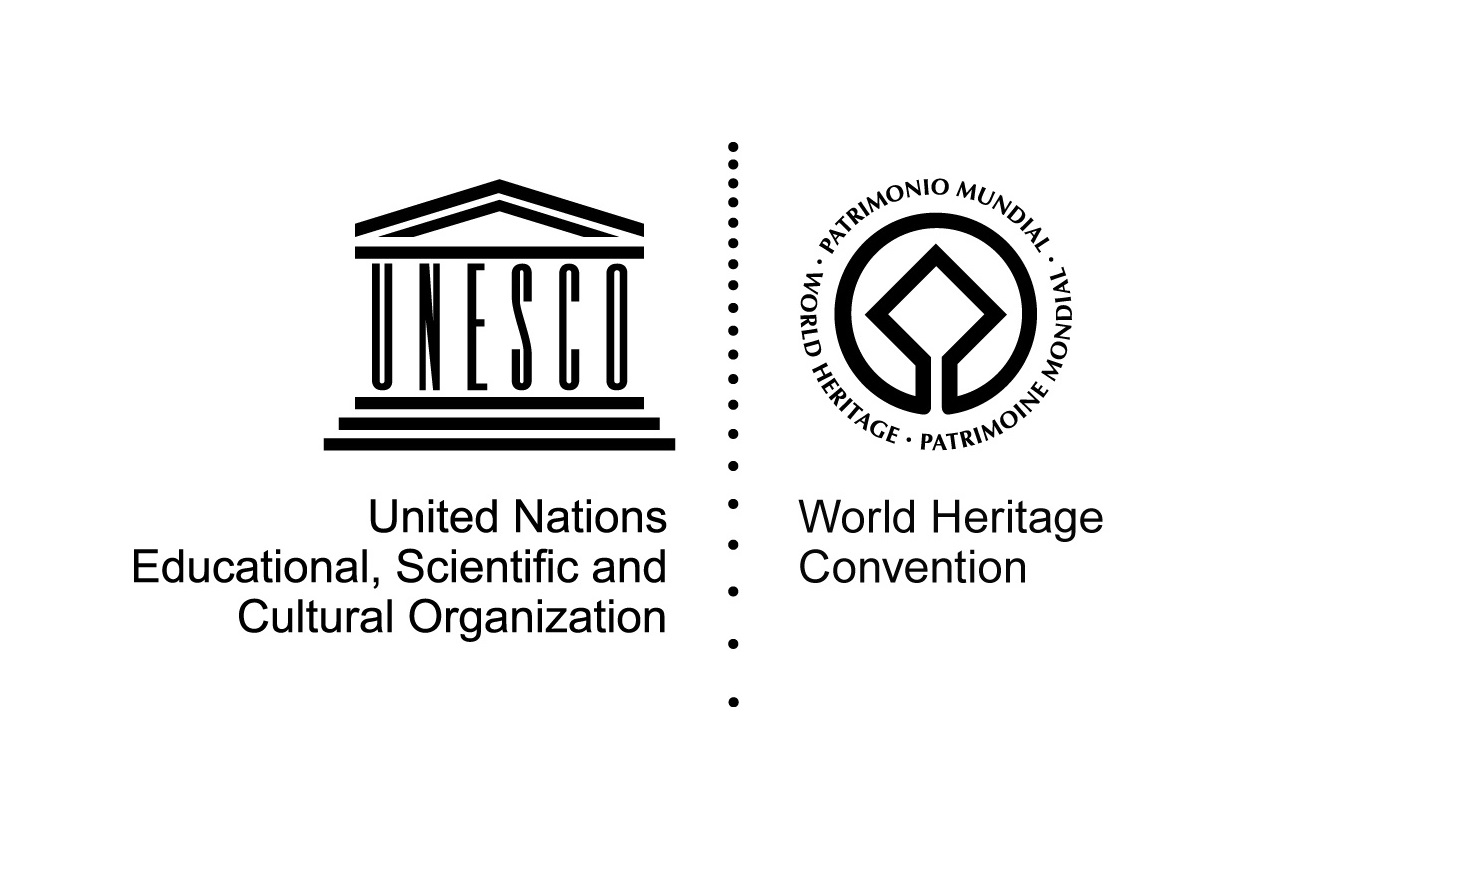 Unesco site